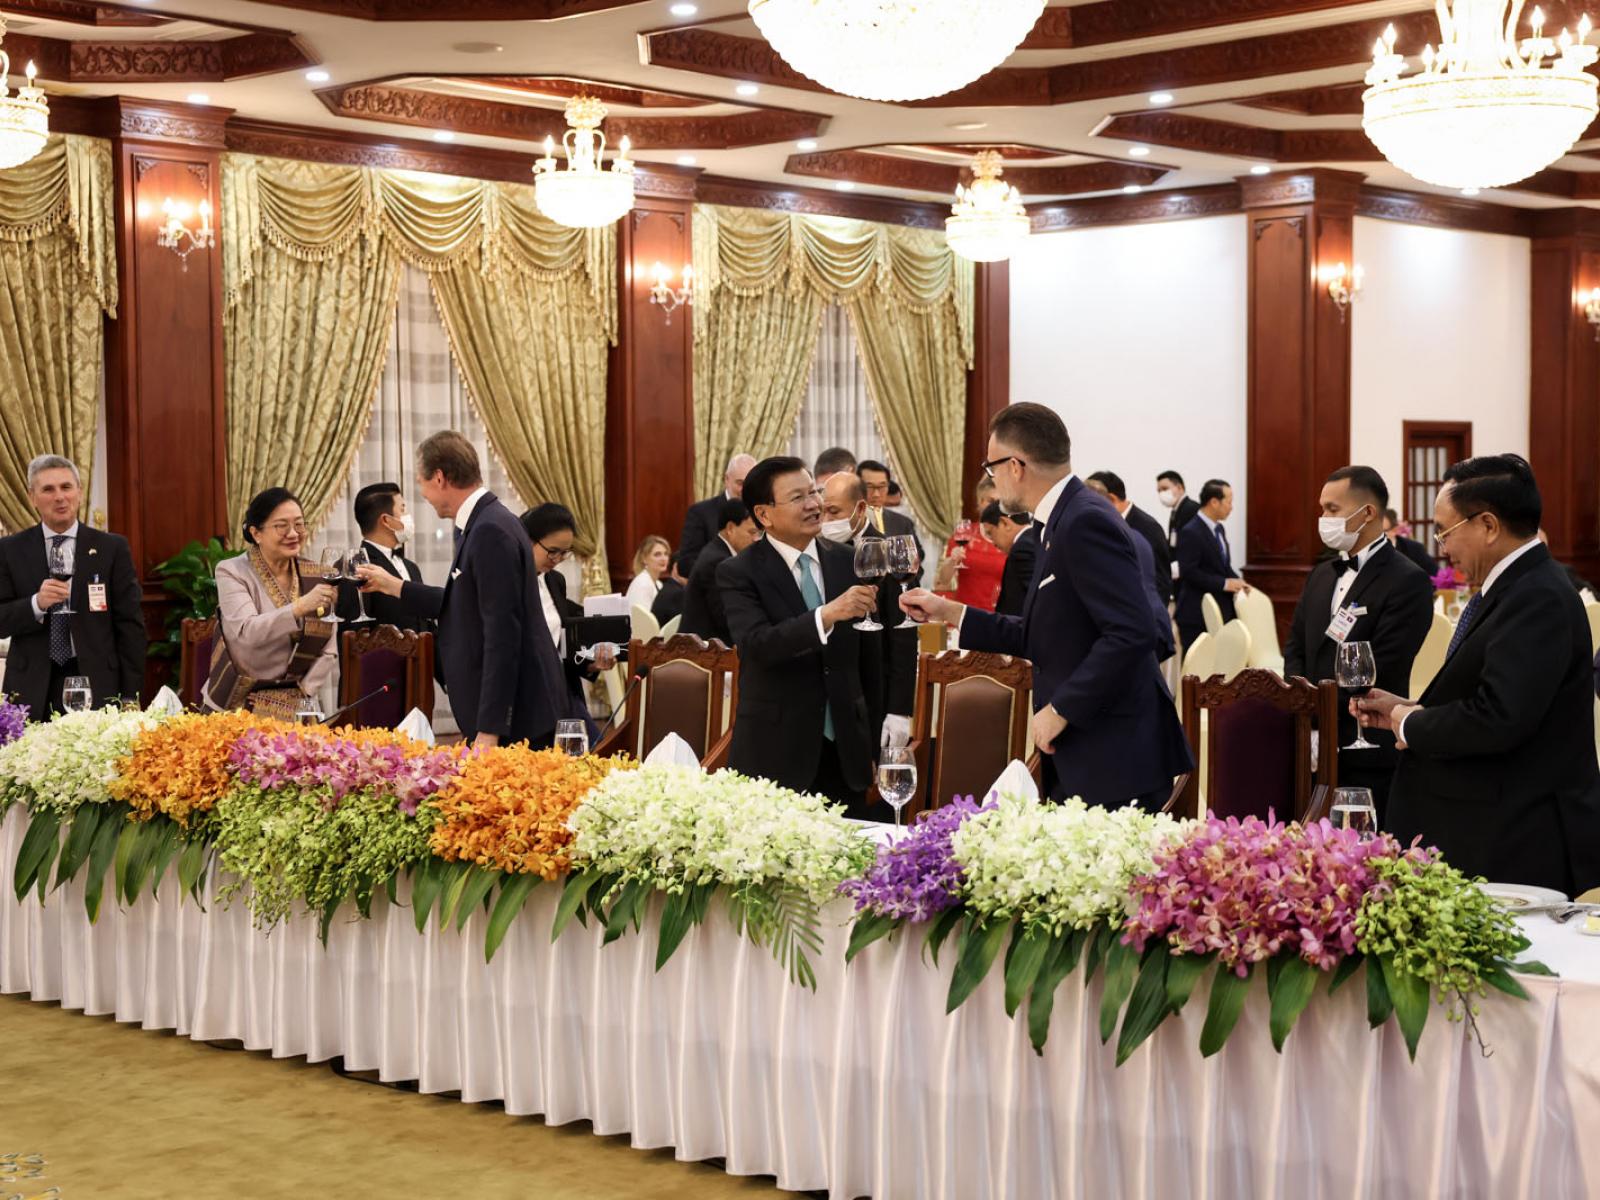 Le Grand-Duc, le Président et les invités trinquent